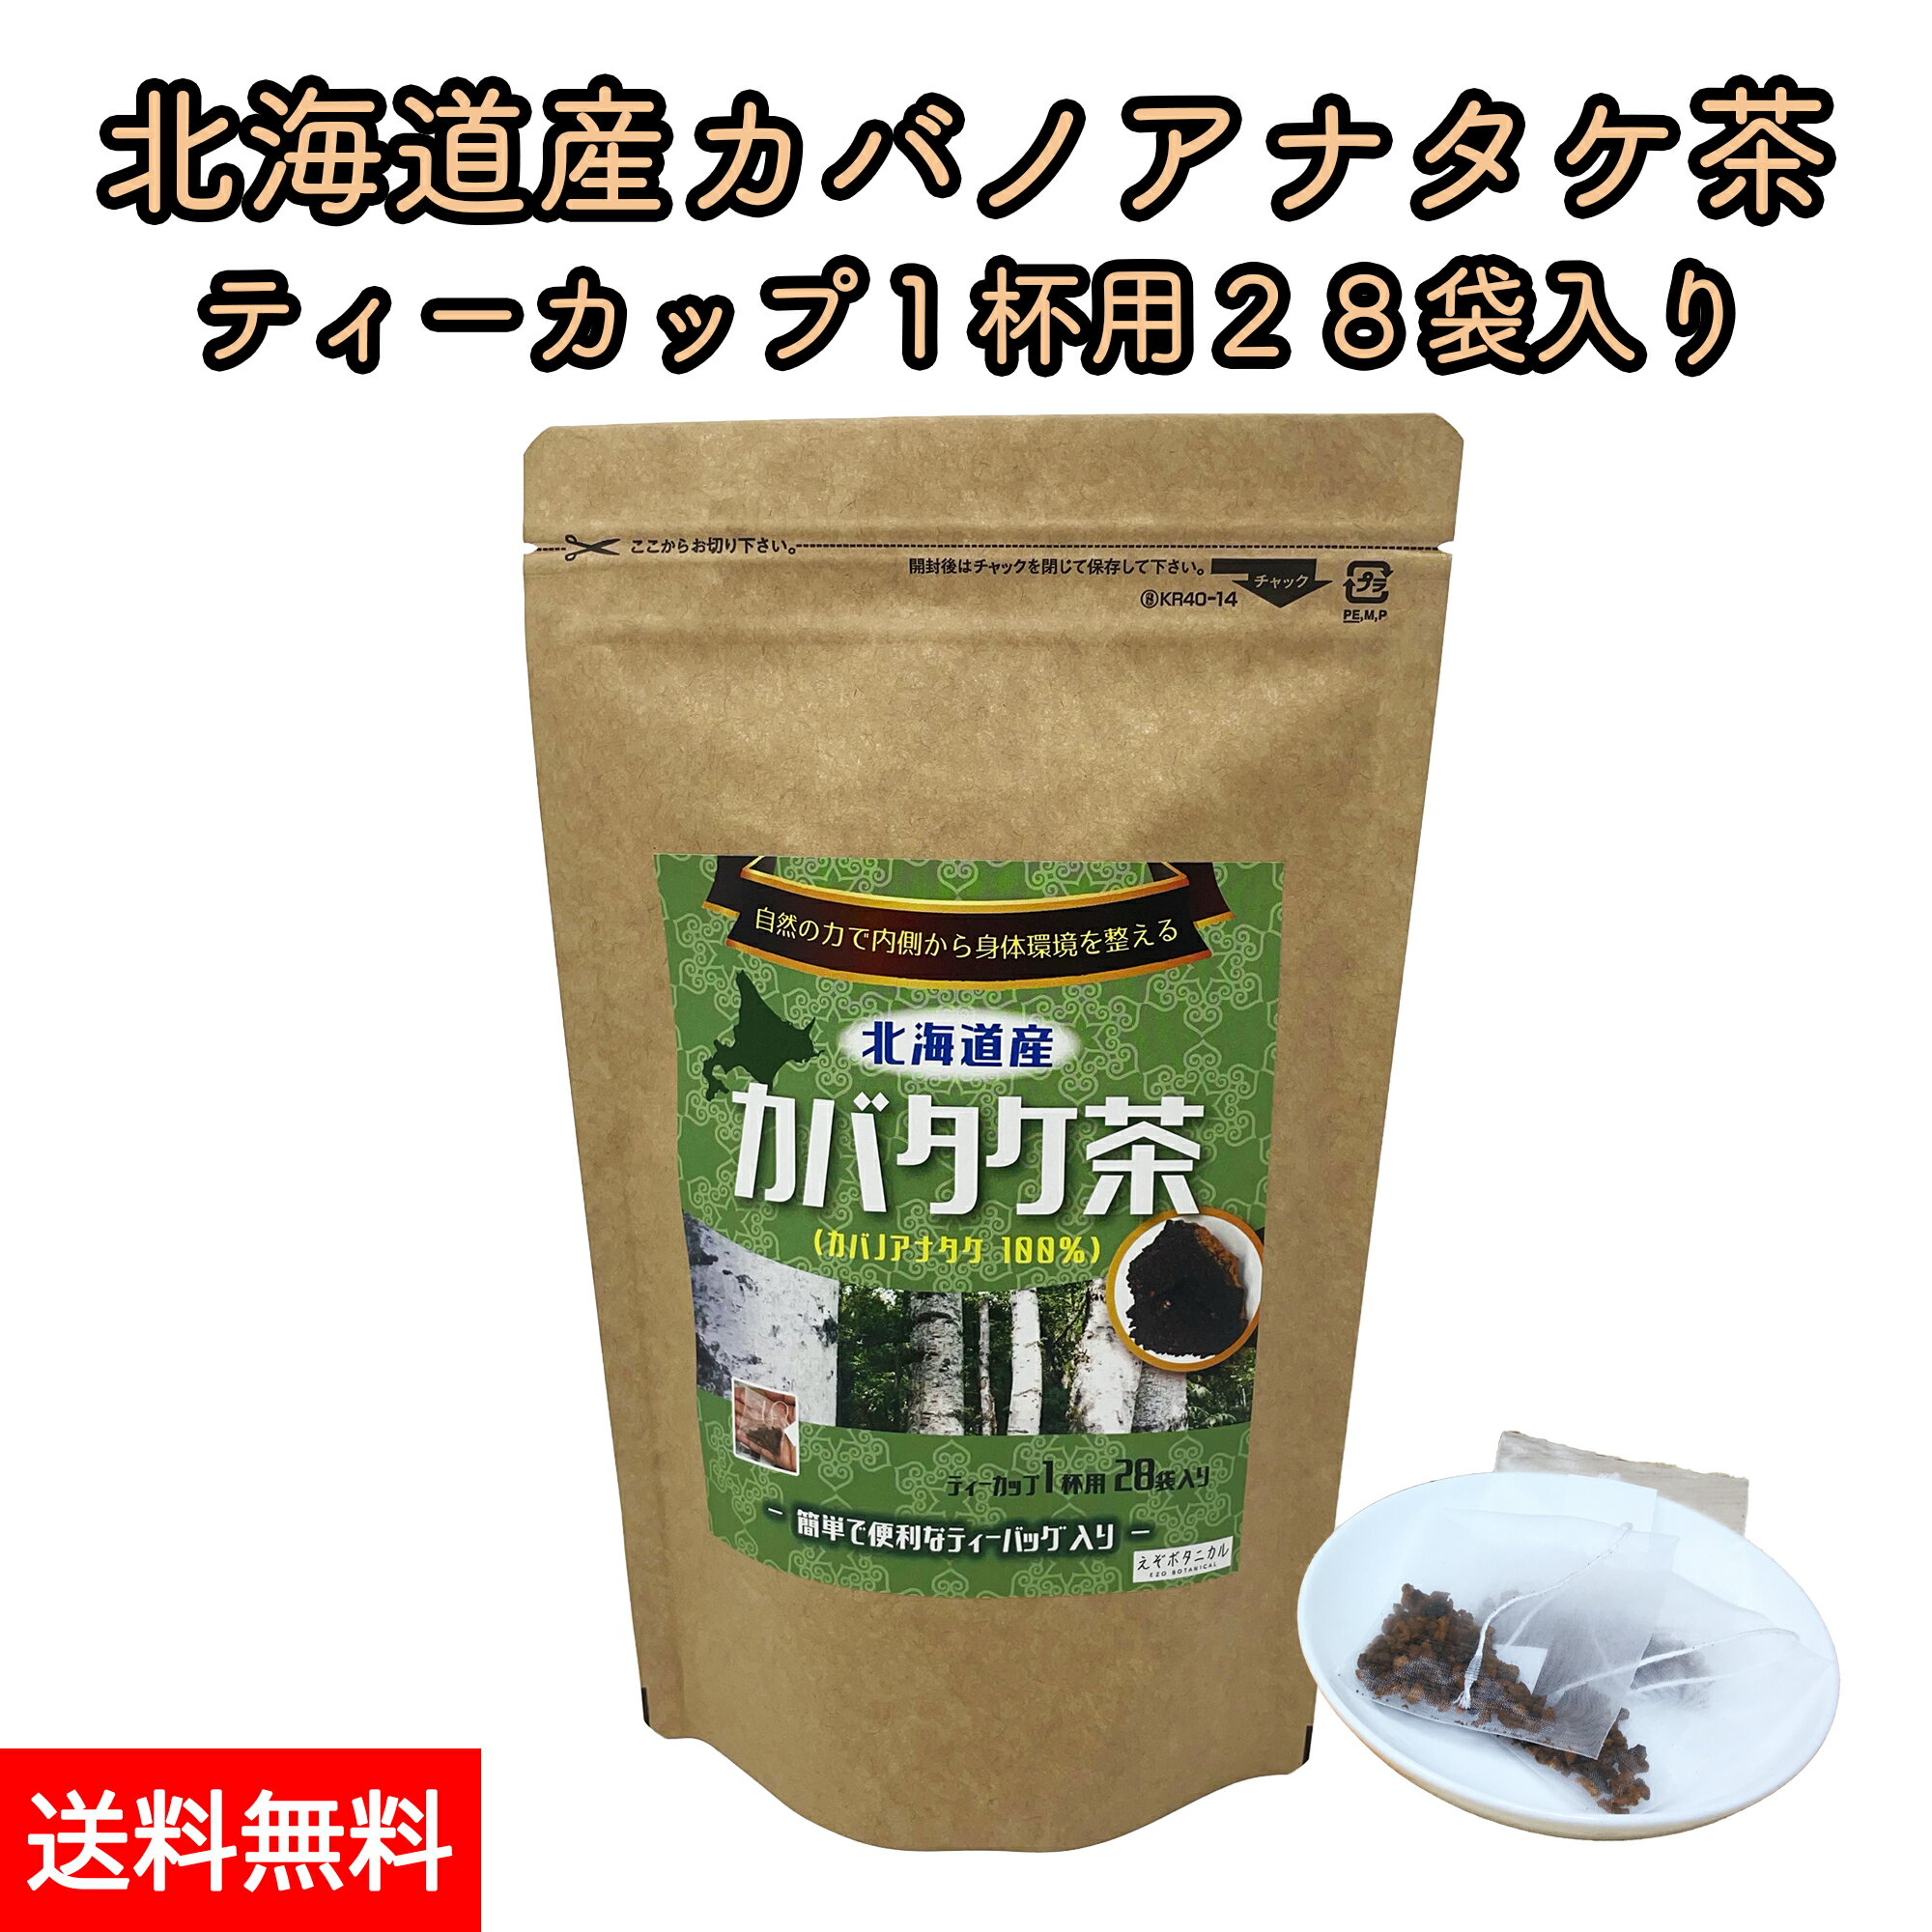 北海道産 カバノアナタケ茶 チャー